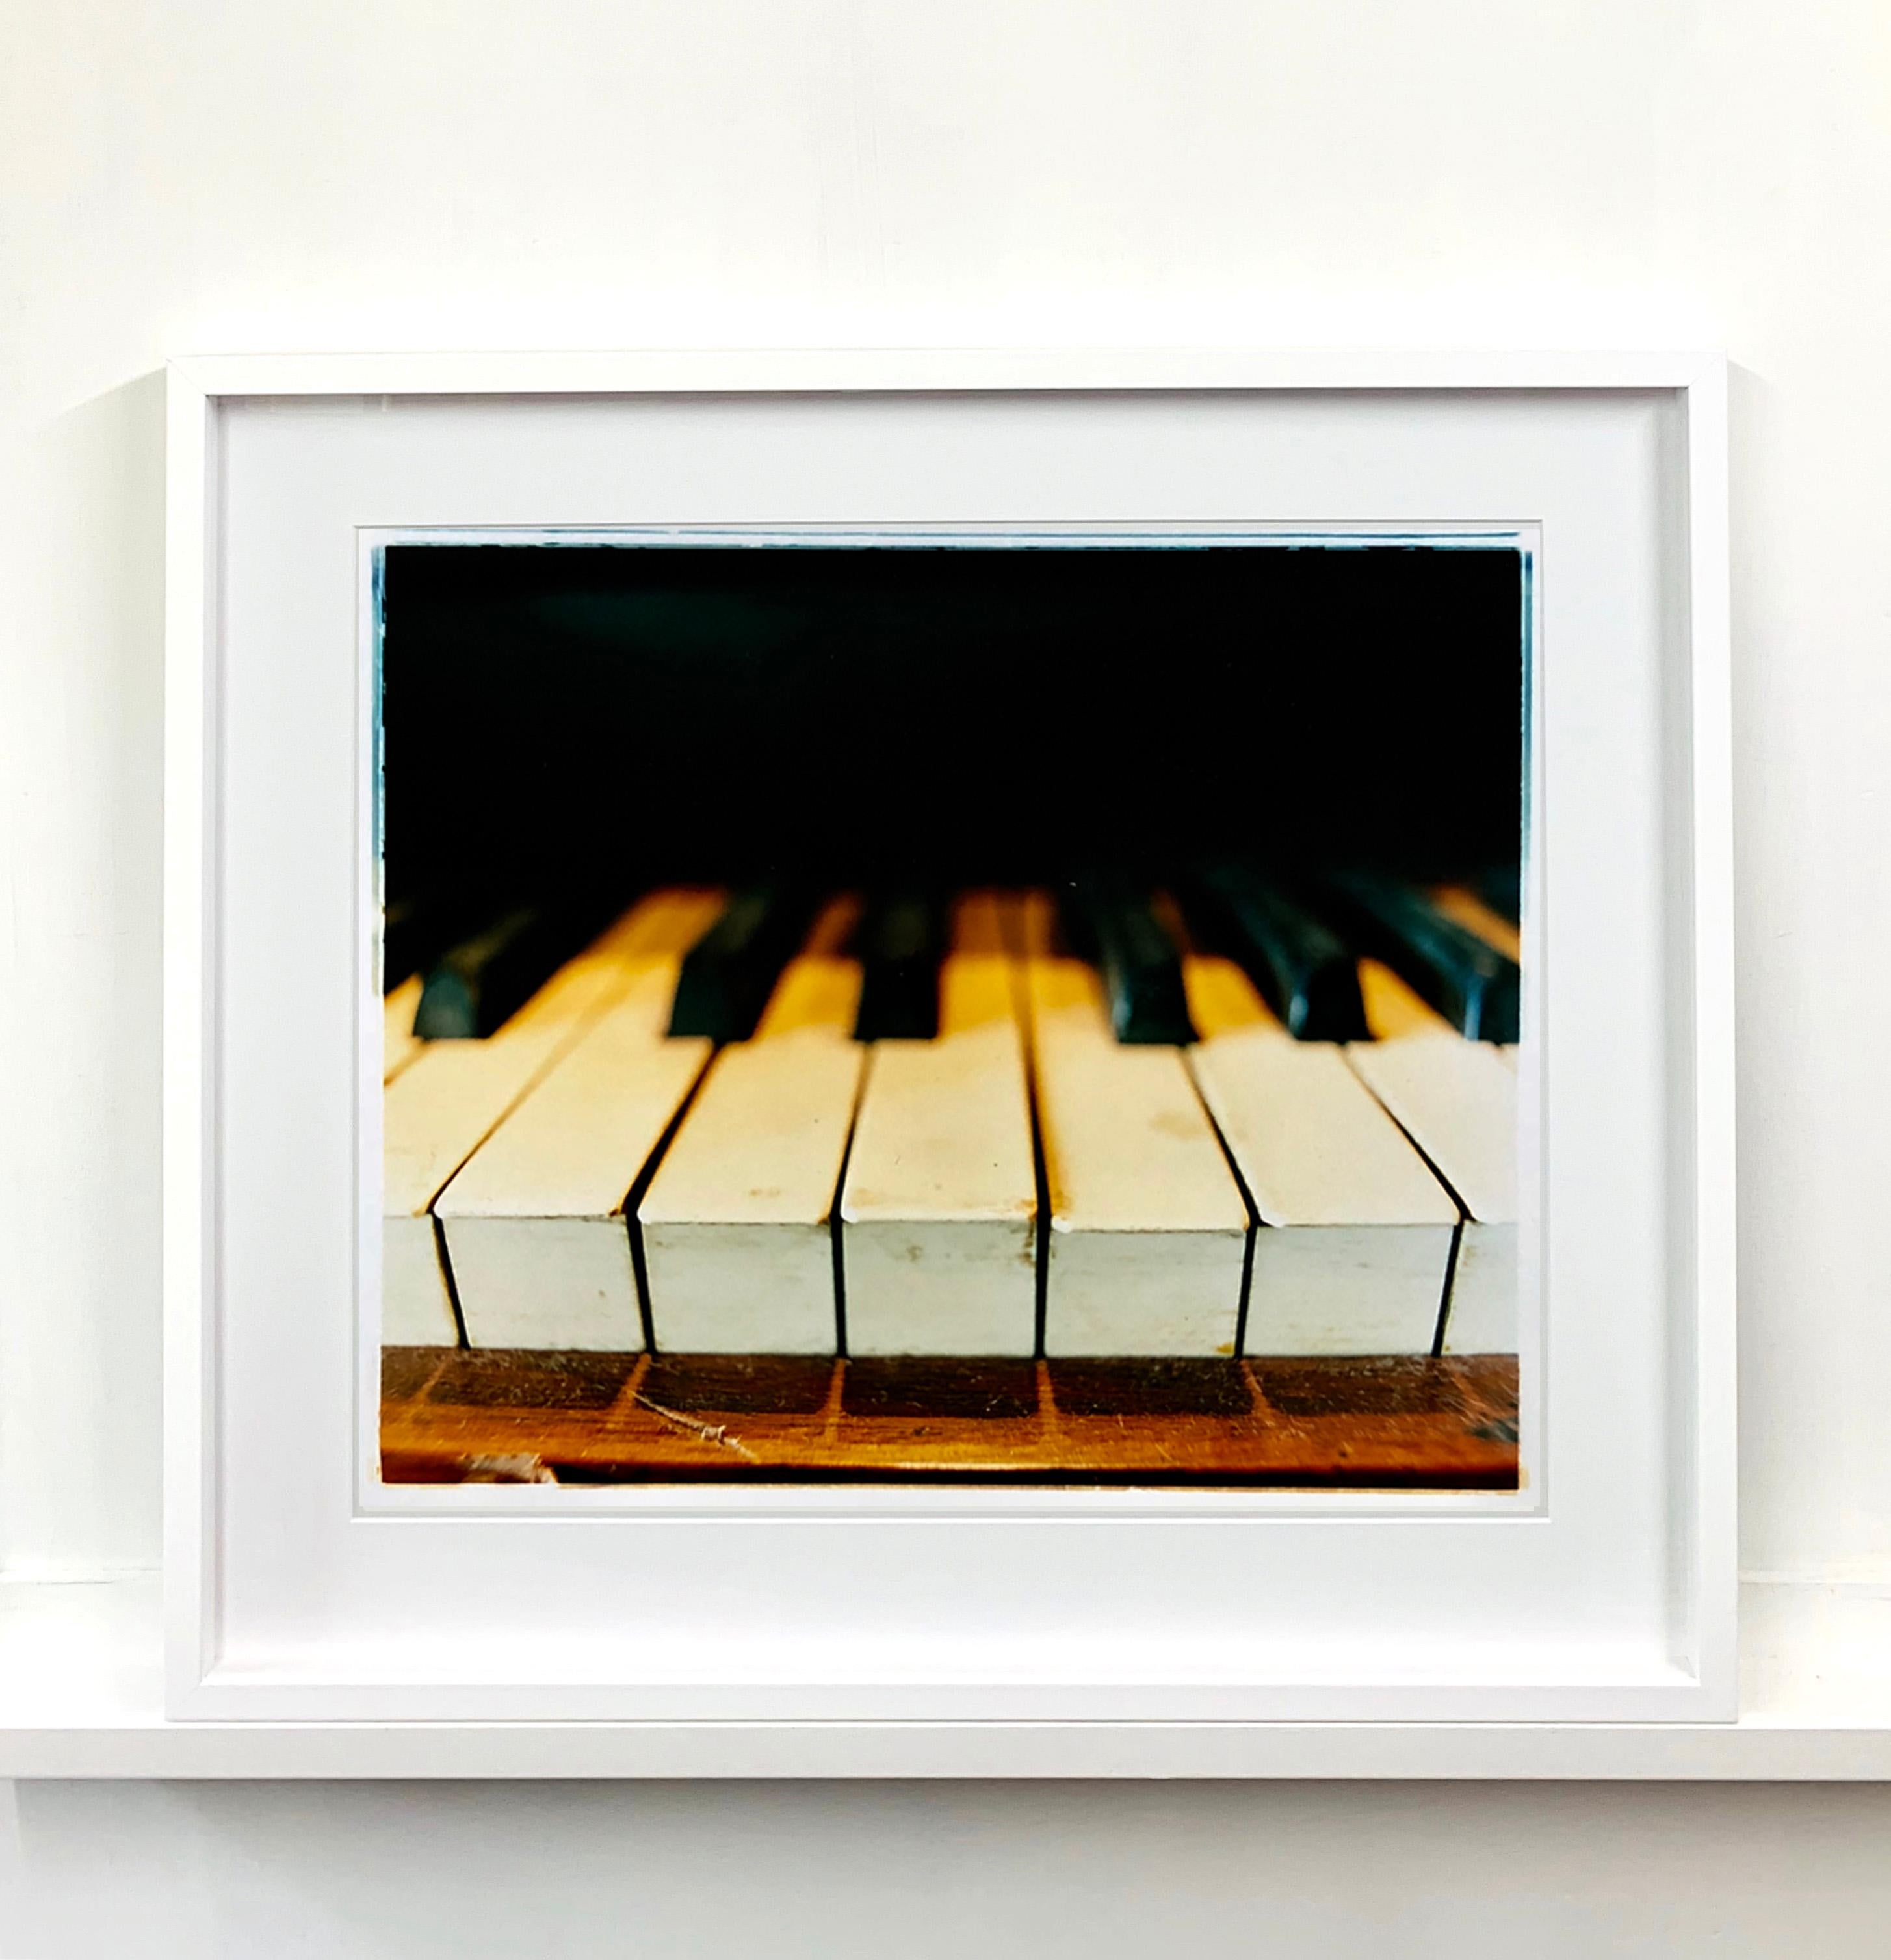 Klavierschlüssel, Stockton-on-Tees - Musikfarbenfotografie (Zeitgenössisch), Print, von Richard Heeps